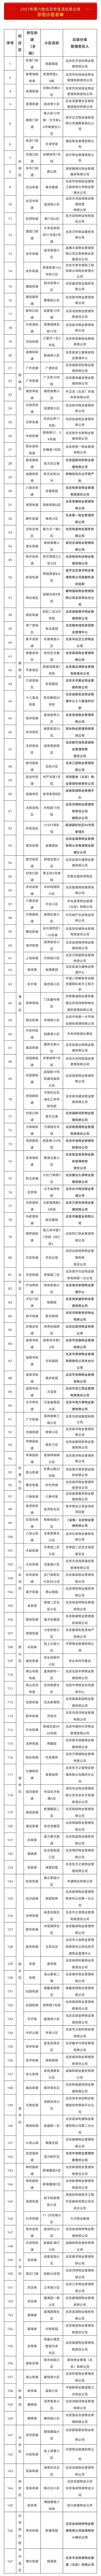 2021年第六批北京市生活垃圾分类示范小区名单